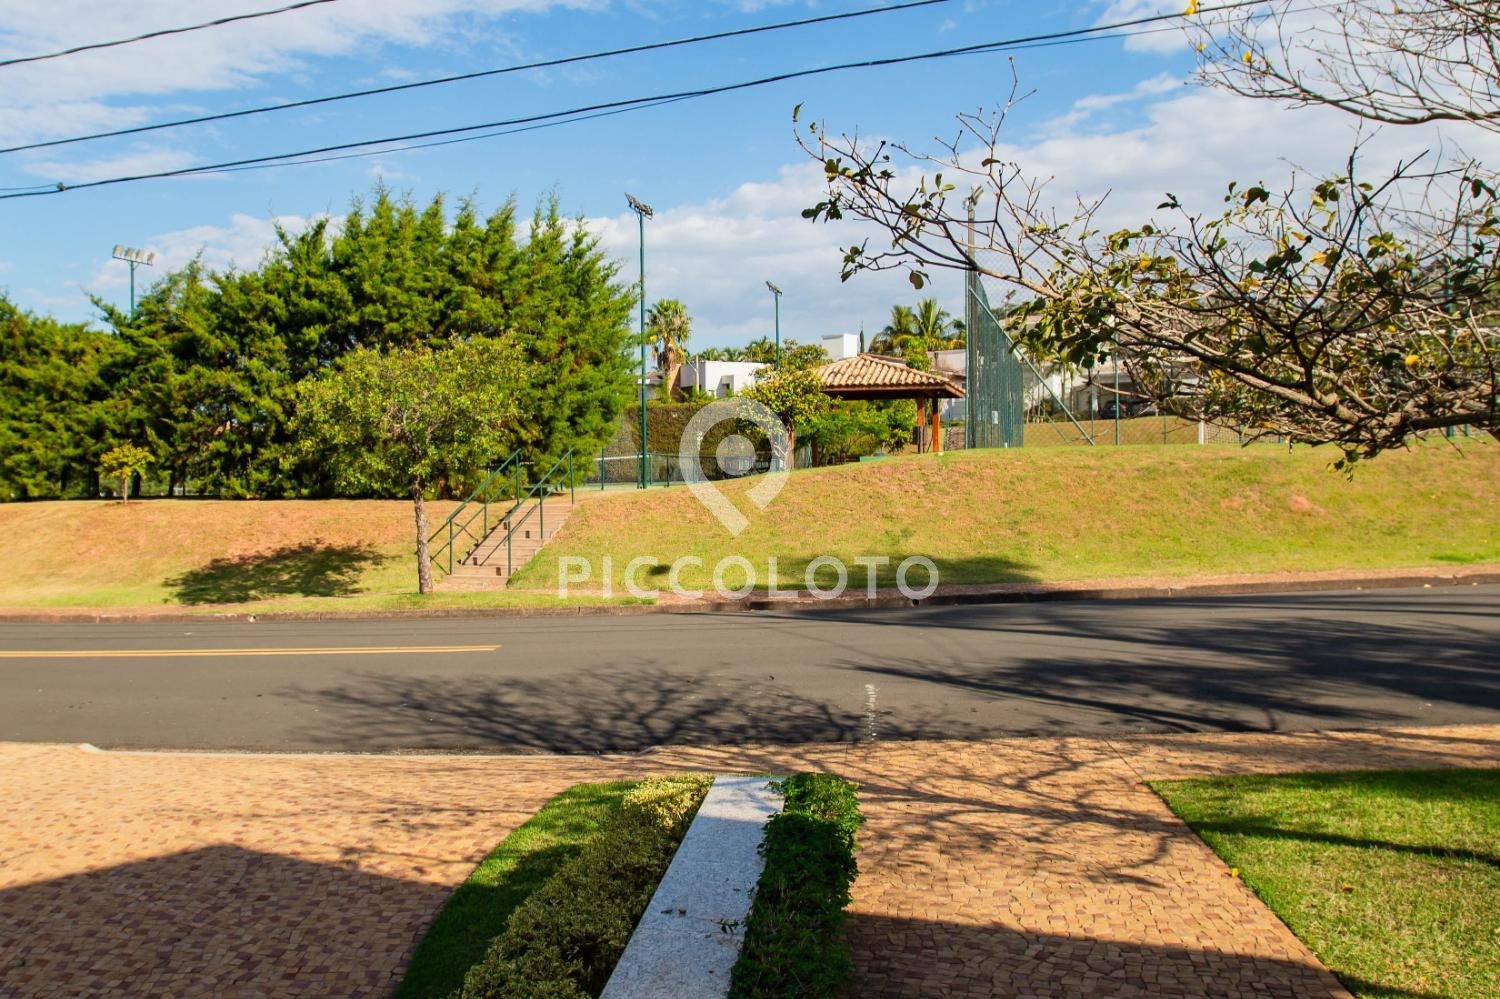 Piccoloto -Casa à venda no Loteamento Arboreto dos Jequitibás (Sousas) em Campinas